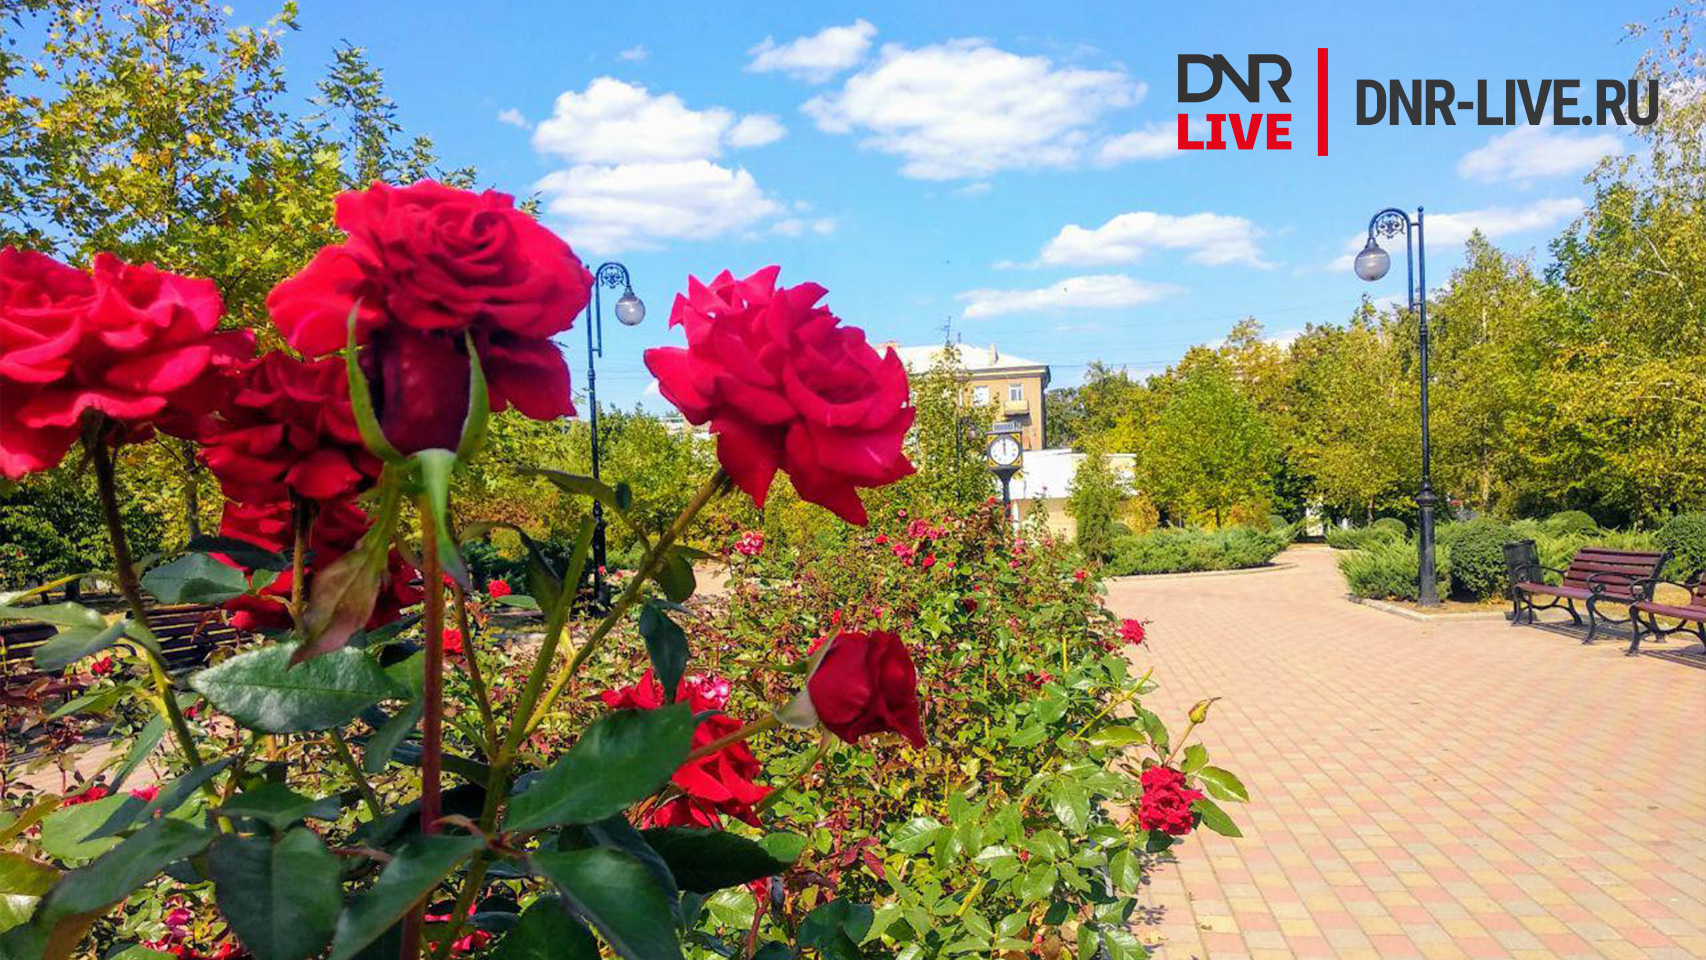 Донецк город роз красивые фото